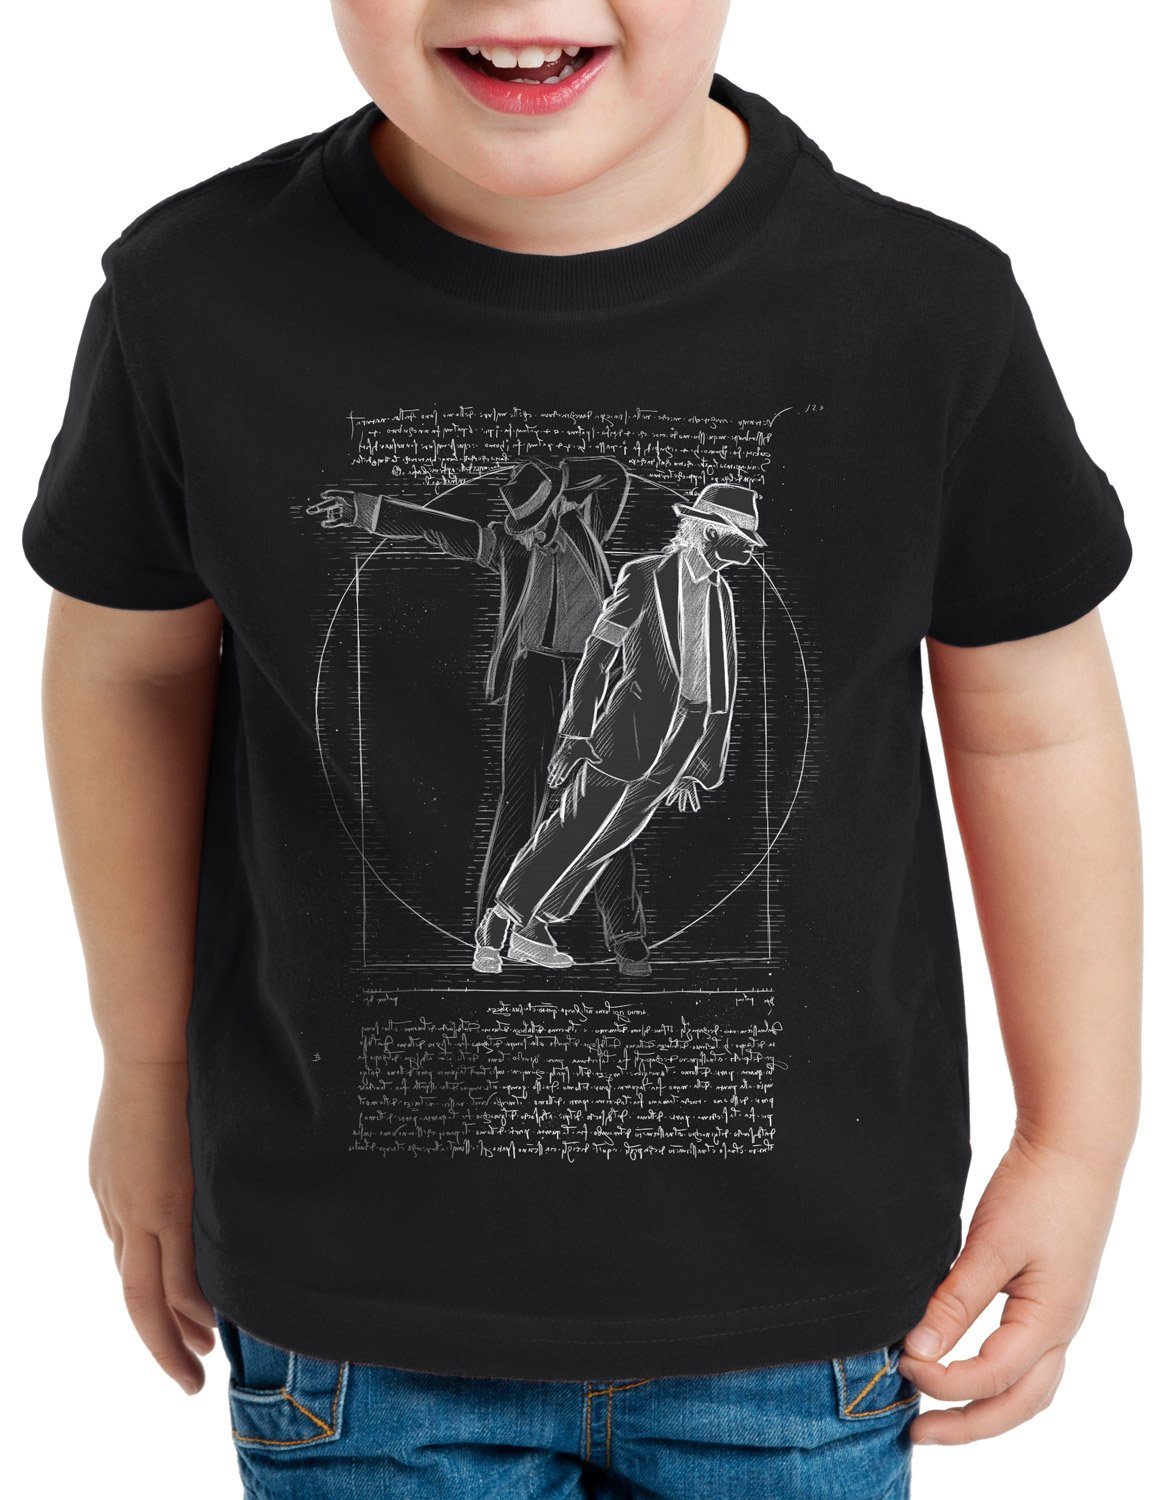 da King schwarz Vitruvianischer Print-Shirt style3 Kinder T-Shirt vinci moonwalk Pop michael